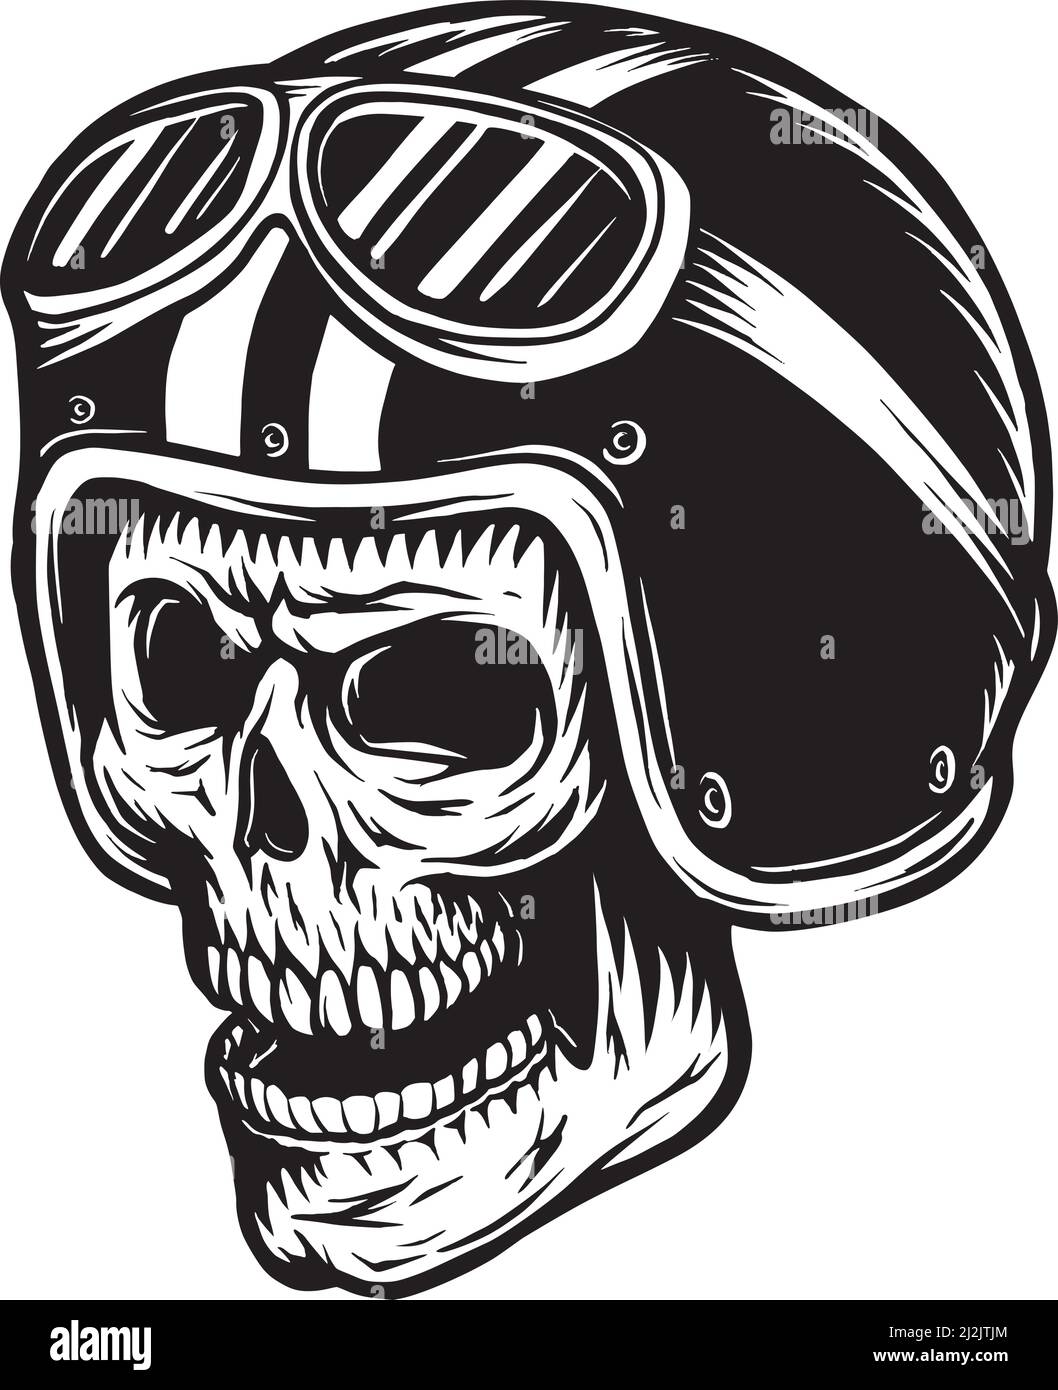 vintage motorrad logo vorlage mit schädel rennfahrer im helm und gekreuzten  motorkolben isolierte vektorillustration 7721200 Vektor Kunst bei Vecteezy